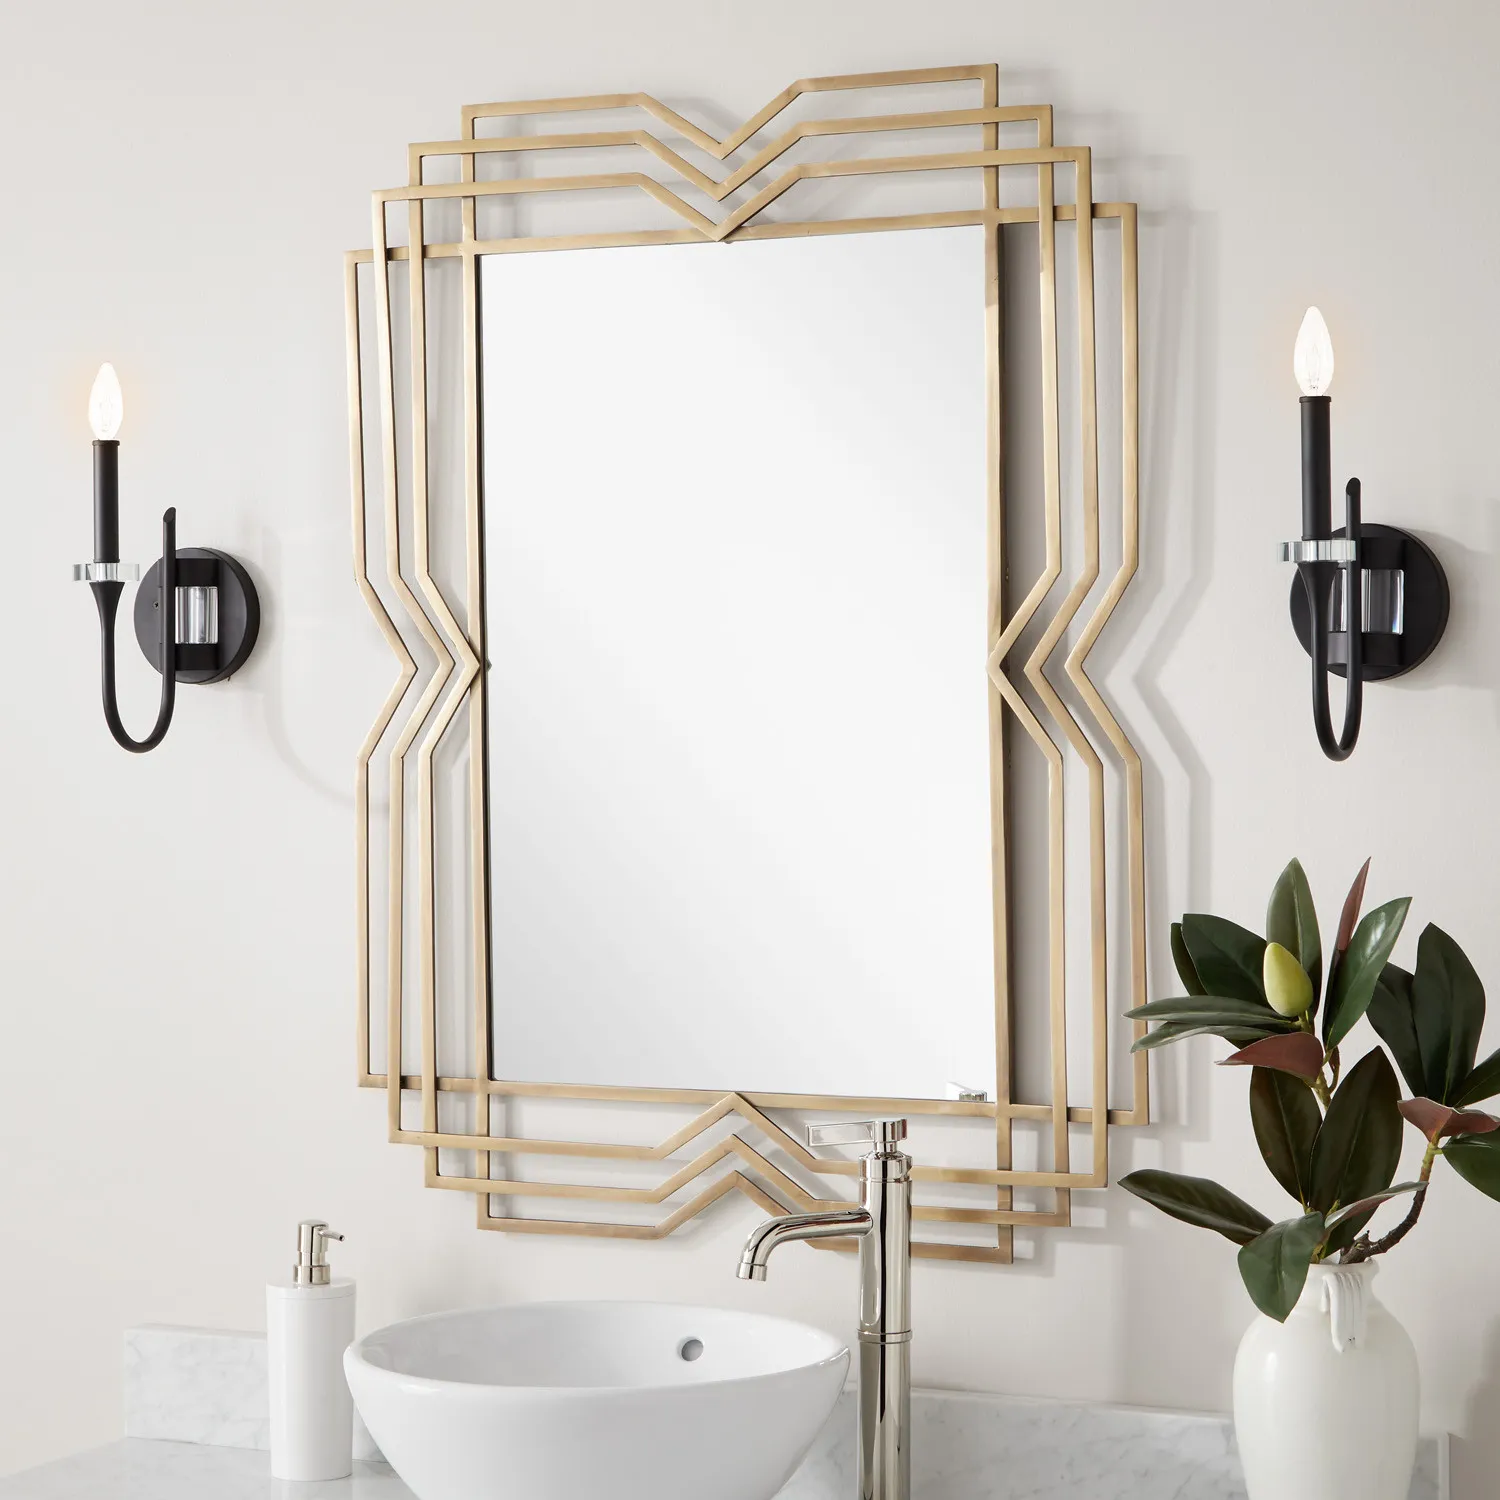 Vanity or Toilet mirrors